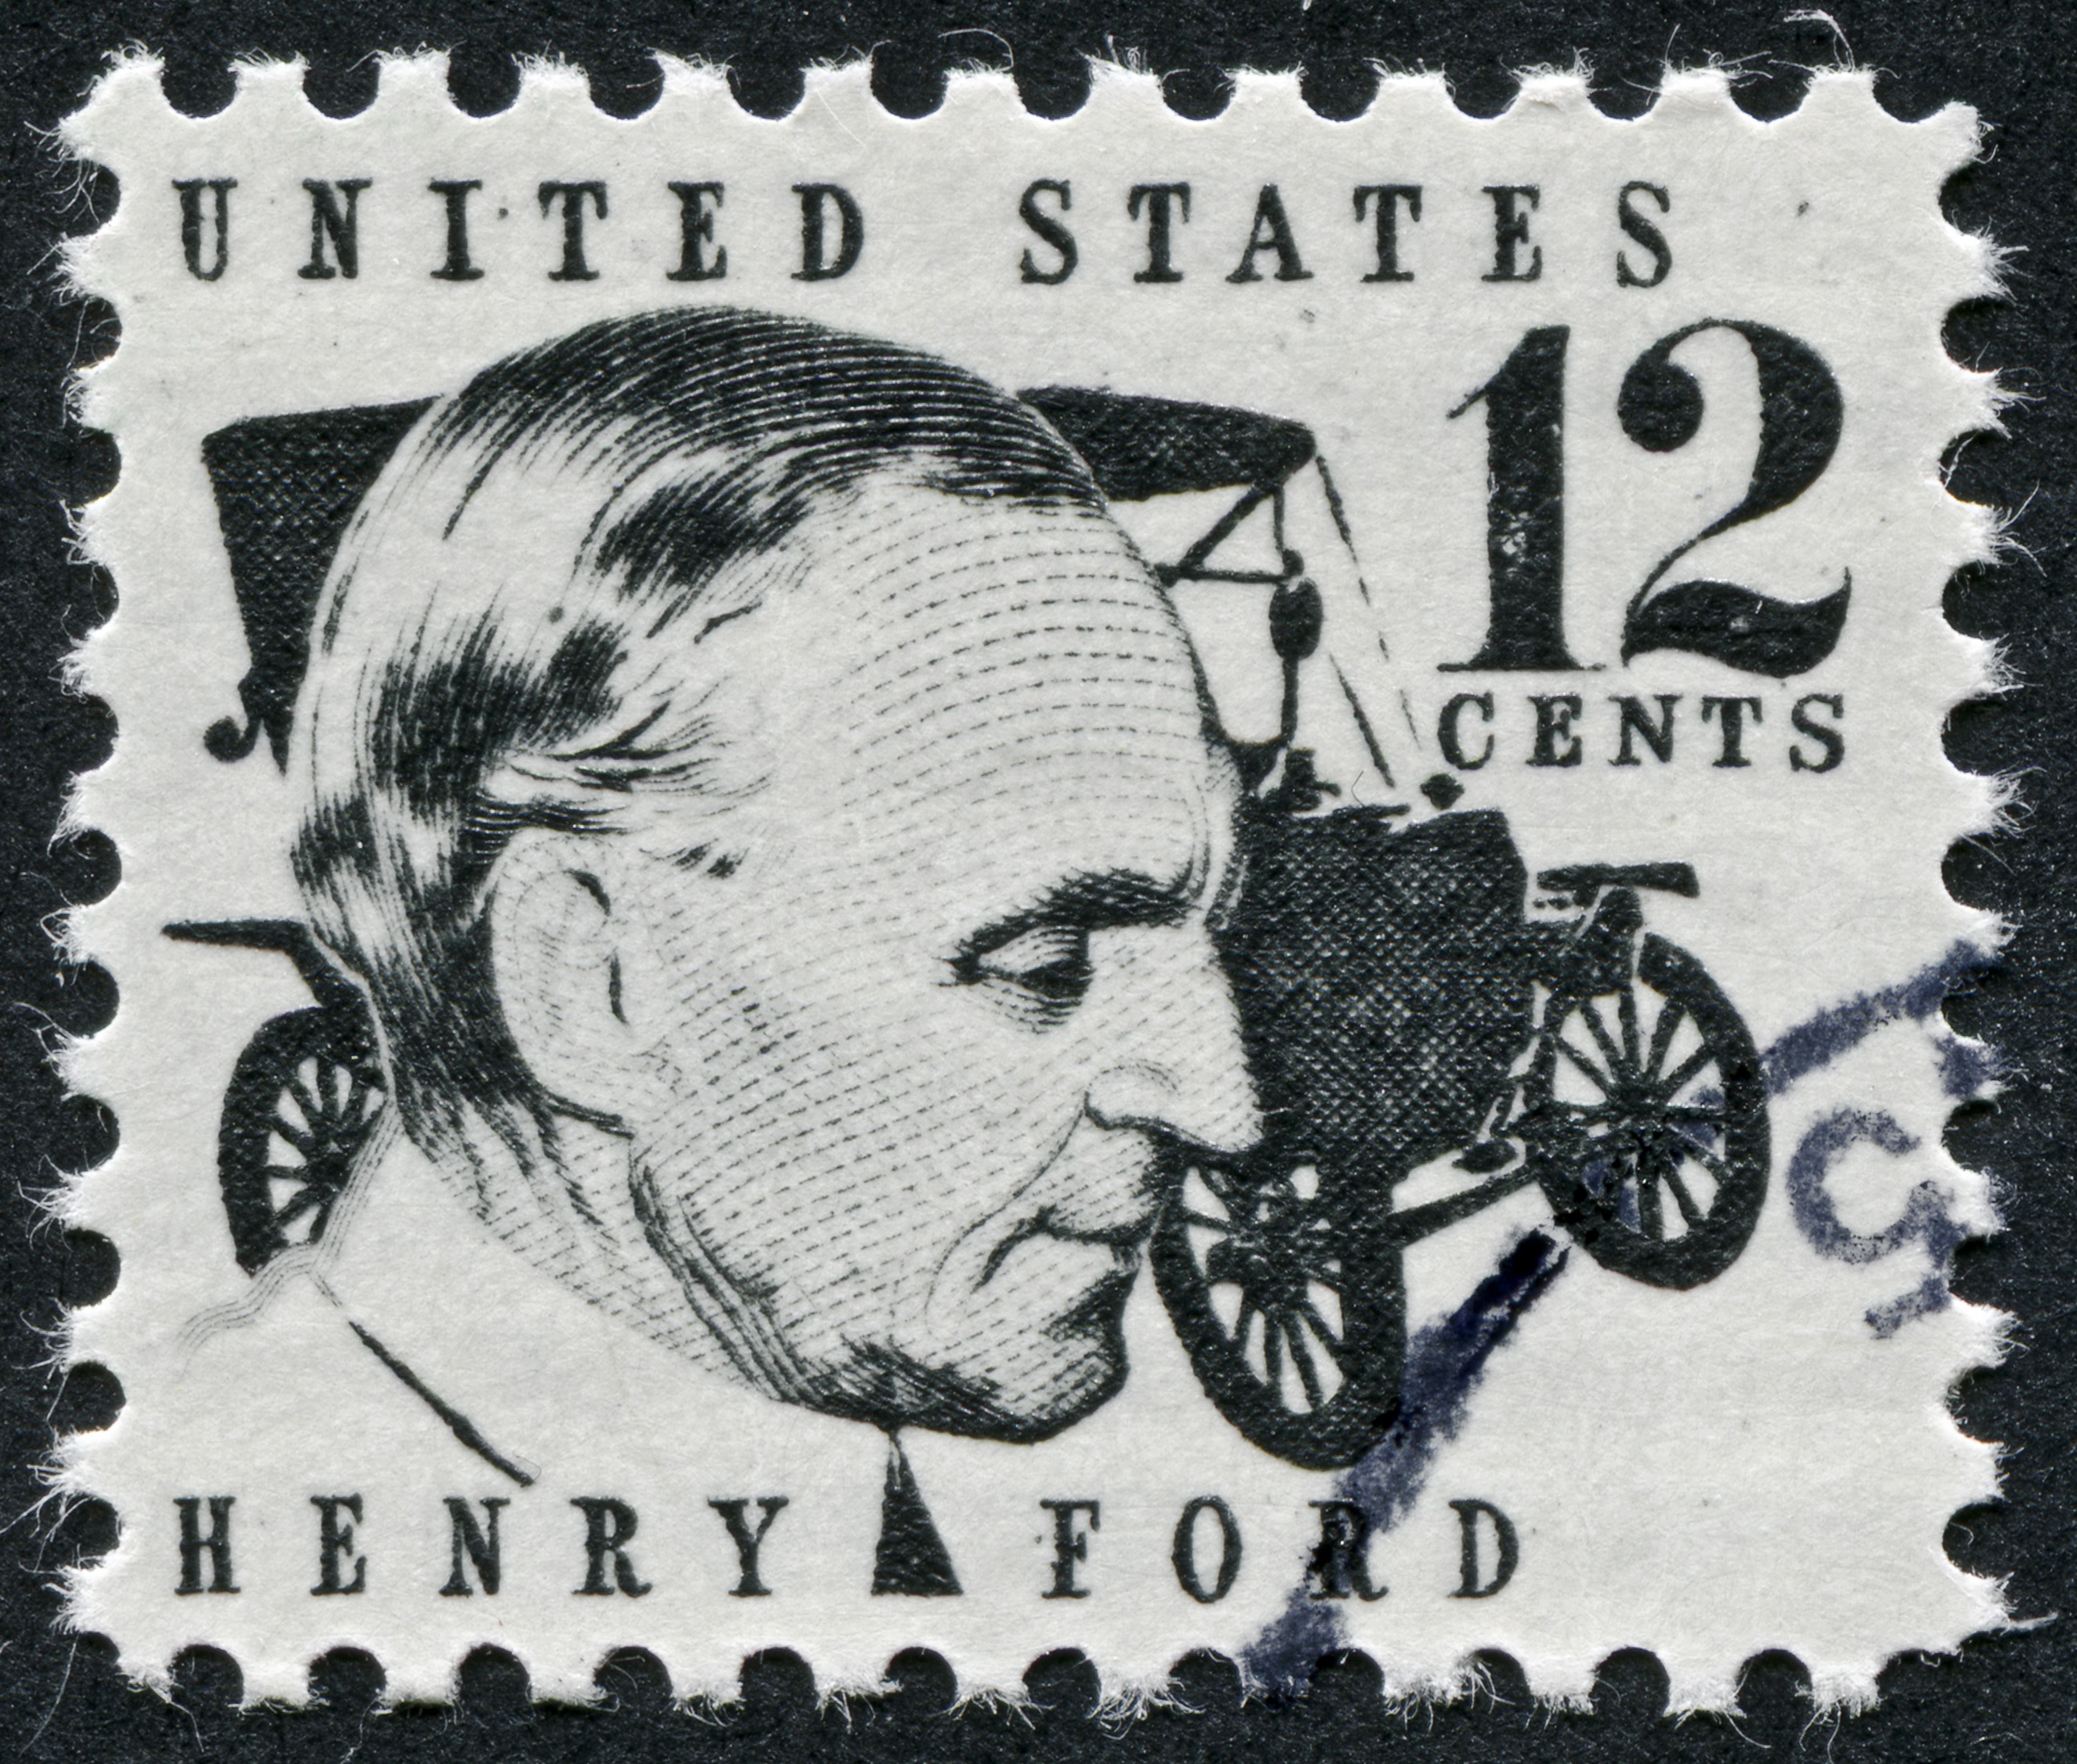 <p><strong>Хенри Форд е създал първата модерна кола</strong></p>

<p>През 1885/1886 г. Карл Бенц създава колата си, докато Хенри Форд създава своя бензинов автомобил само няколко години по-късно, около 1893 г. Днес обаче Форд се помни като пионер на първата кола, въпреки че Бенц вече я е създал преди него.</p>